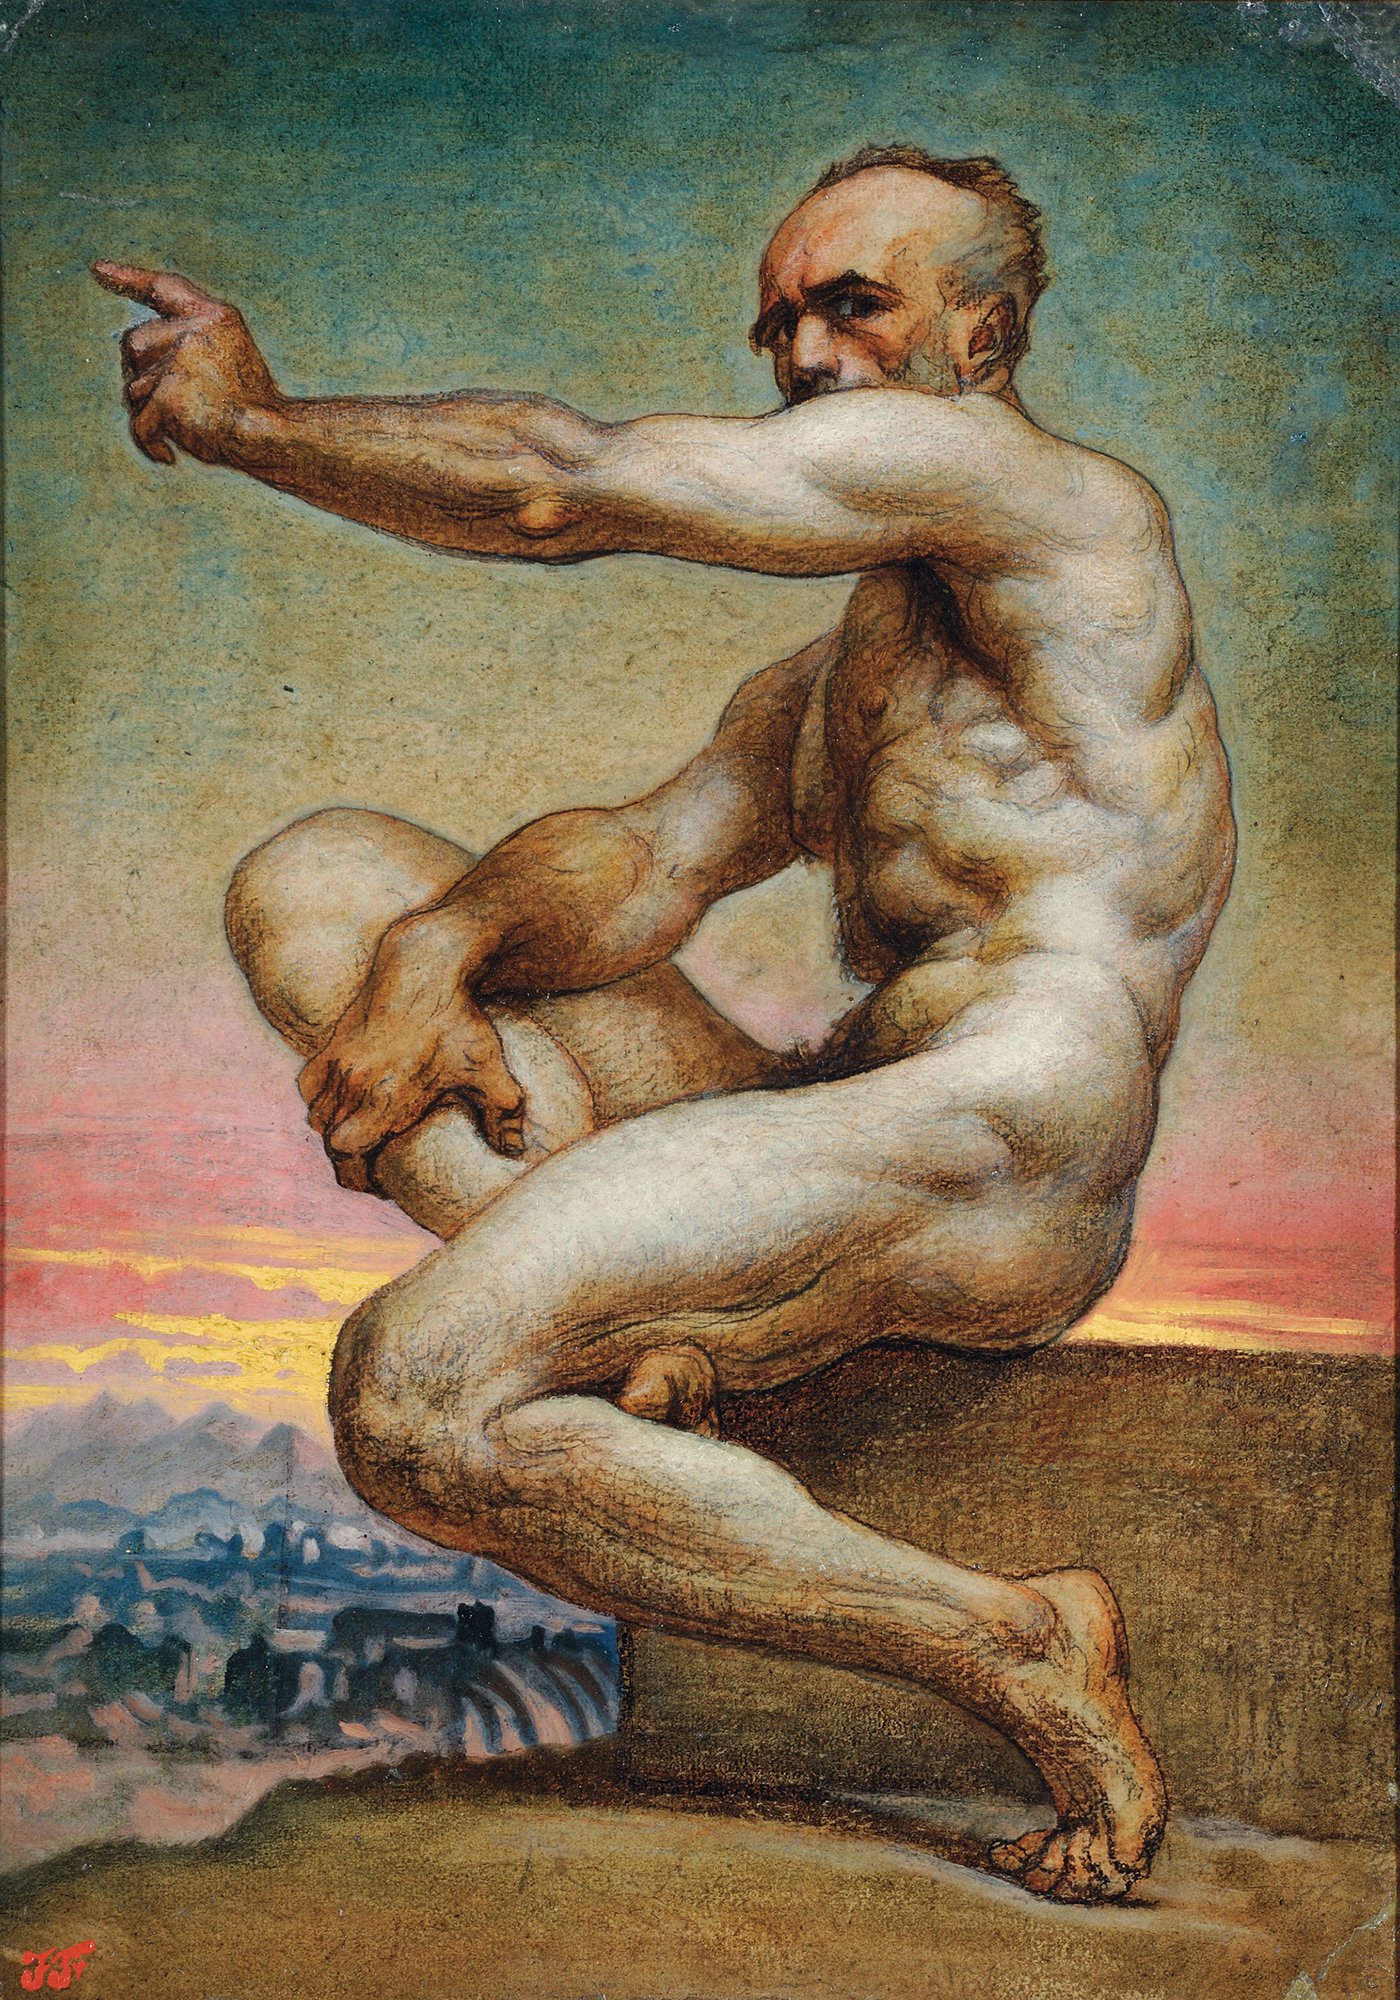 Abbildung des Werks "Selbstbildnis als Akt" von Jean-Baptiste Frenet aus den Jahren 1850/60. Der Künstler sitzt nackt auf einem Fels und zeigt mit seiner Rechten Hand in die Ferne.